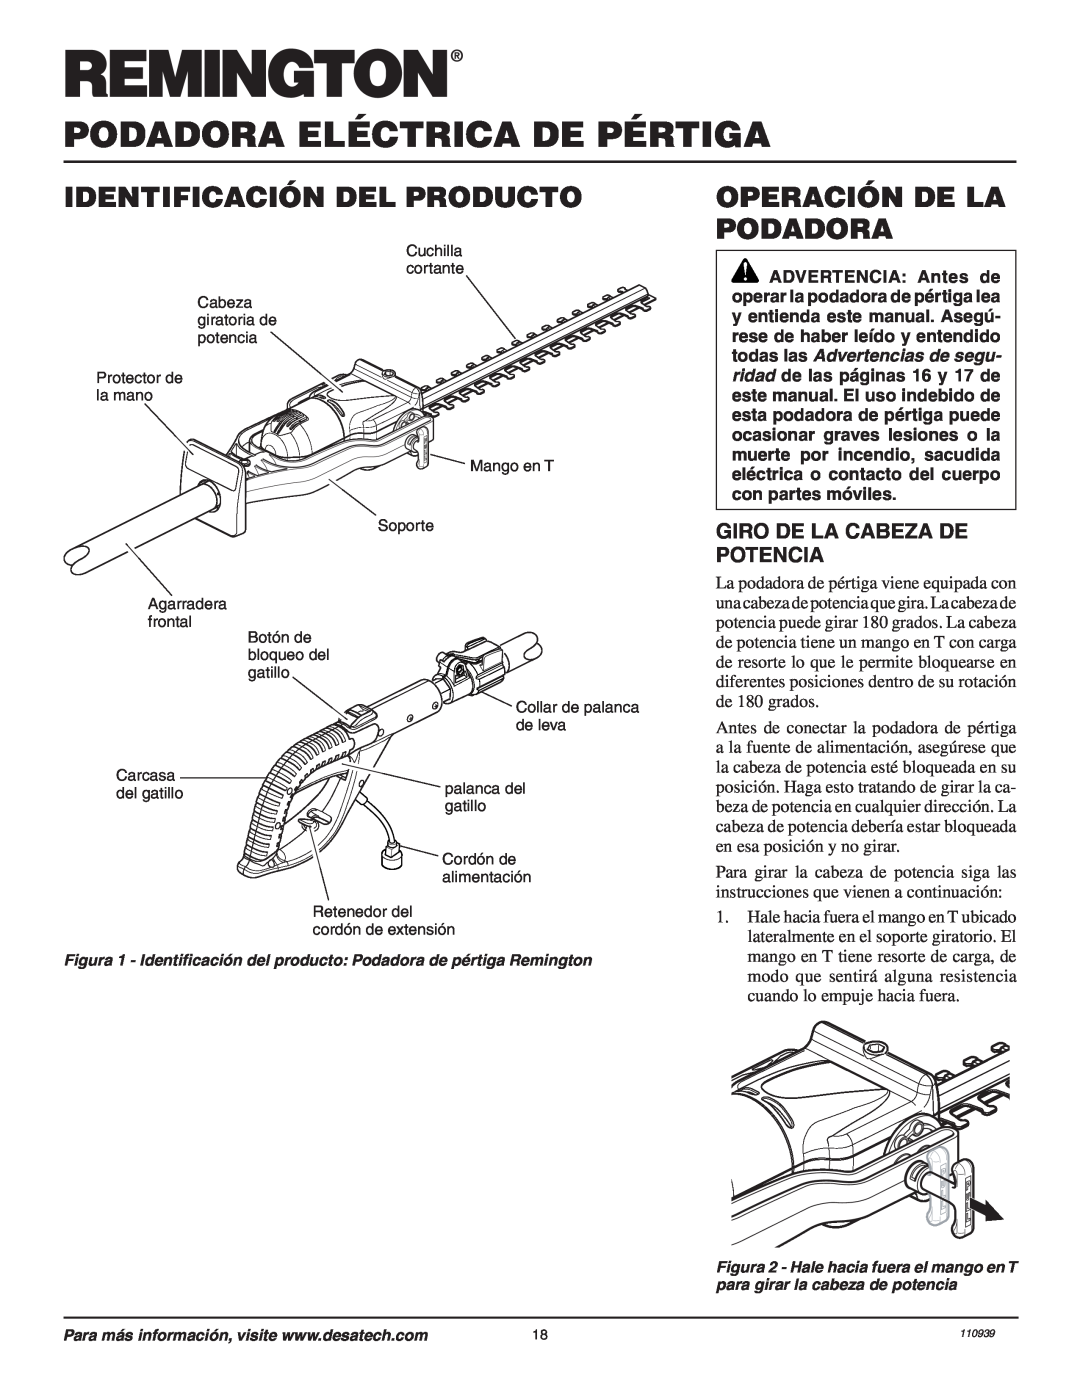 Remington Power Tools 117535-01A Identificación Del Producto, Operación De La Podadora, Giro De La Cabeza De Potencia 